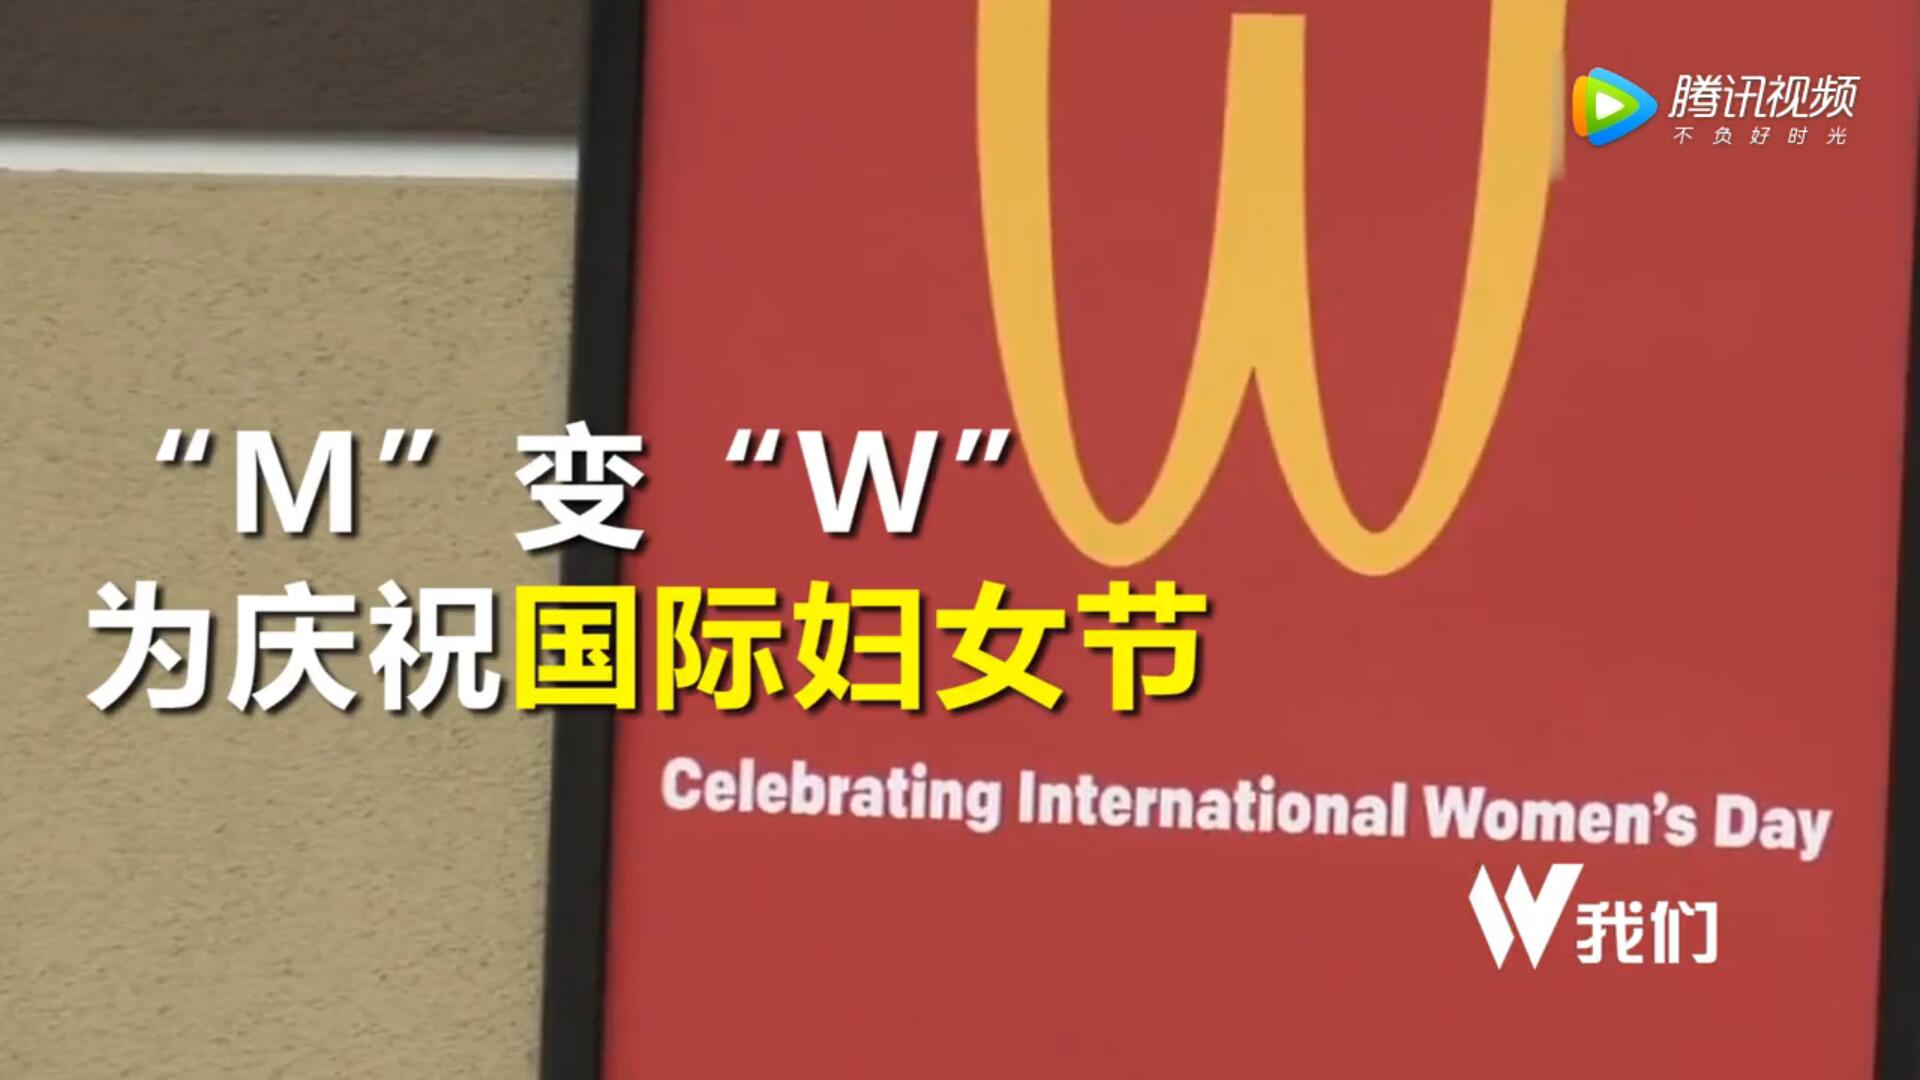 麦当劳金拱门倒立 M变成W为庆祝三八国际妇女节